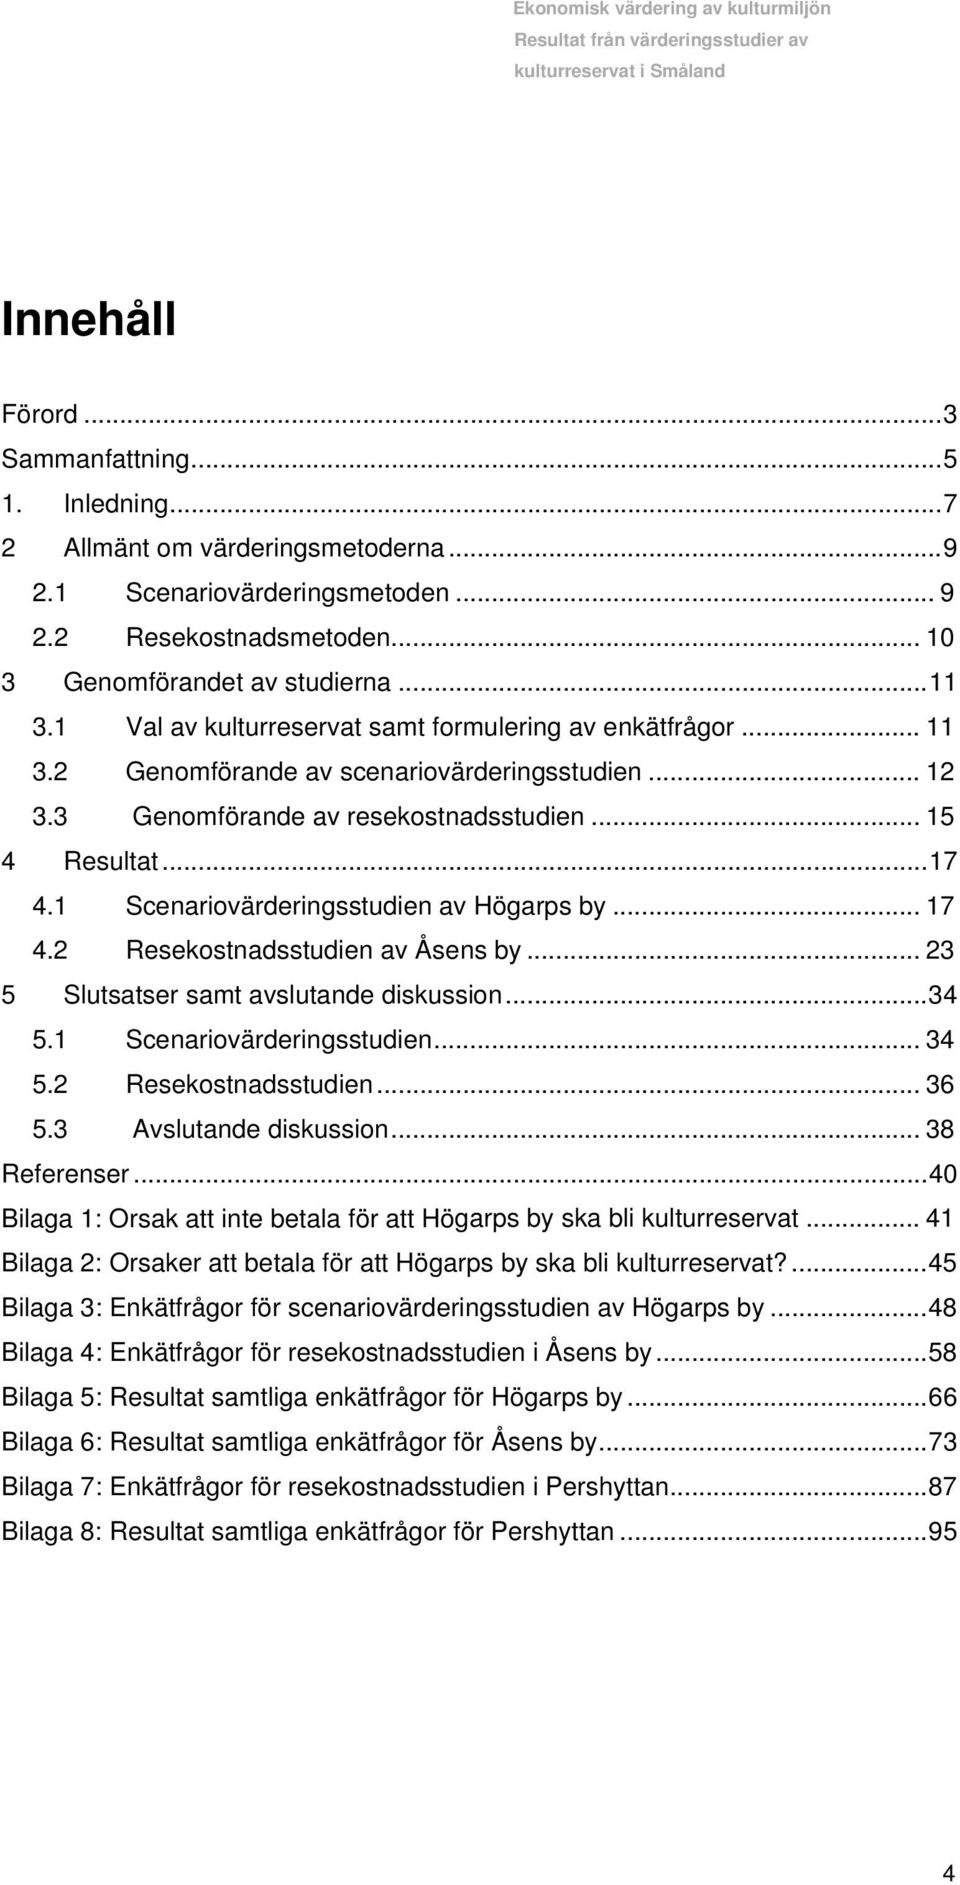 1 Scenariovärderingsstudien av Högarps by... 17 4.2 Resekostnadsstudien av Åsens by... 23 5 Slutsatser samt avslutande diskussion...34 5.1 Scenariovärderingsstudien... 34 5.2 Resekostnadsstudien... 36 5.